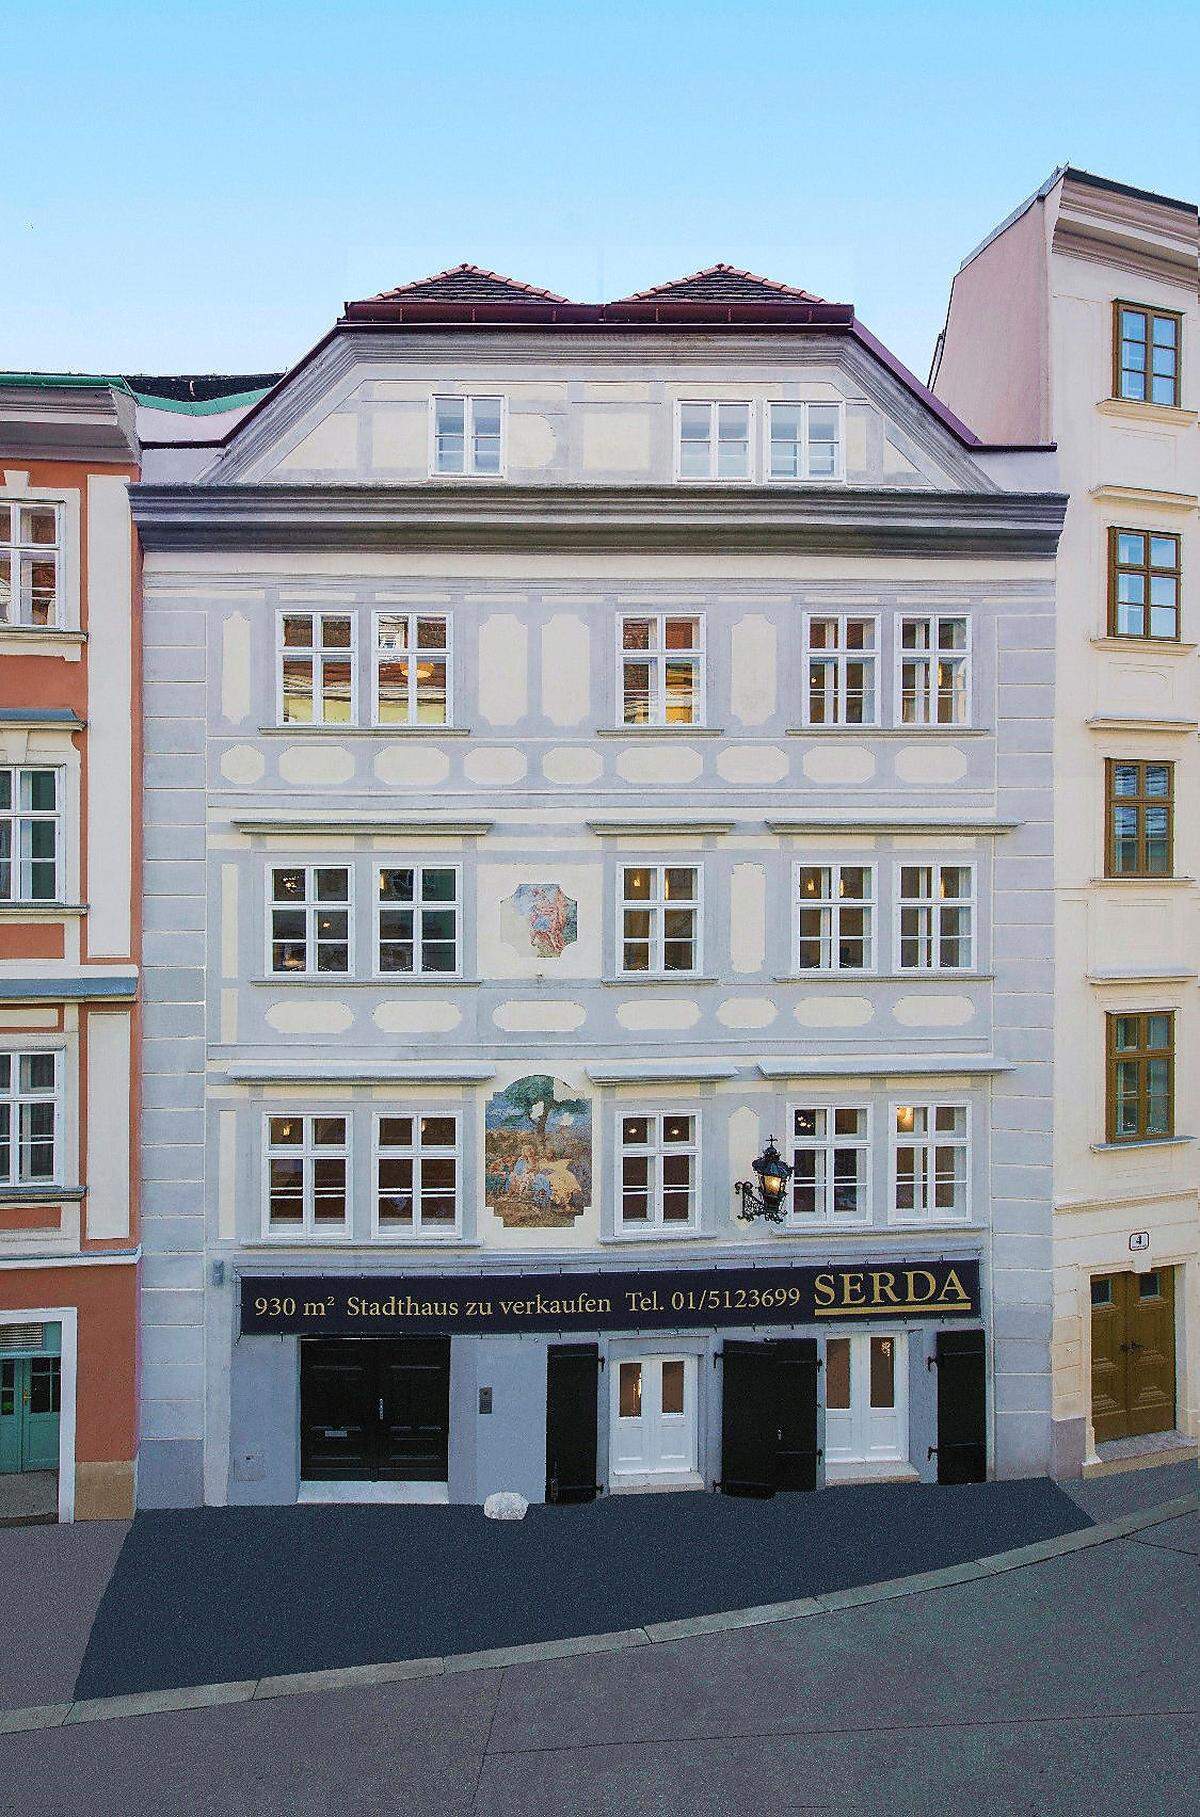 Die restaurierte Fassade mit Fresken und "Schöner Laterne". Das Original der Laterne befindet sich seit 1970 im Wien Museum.